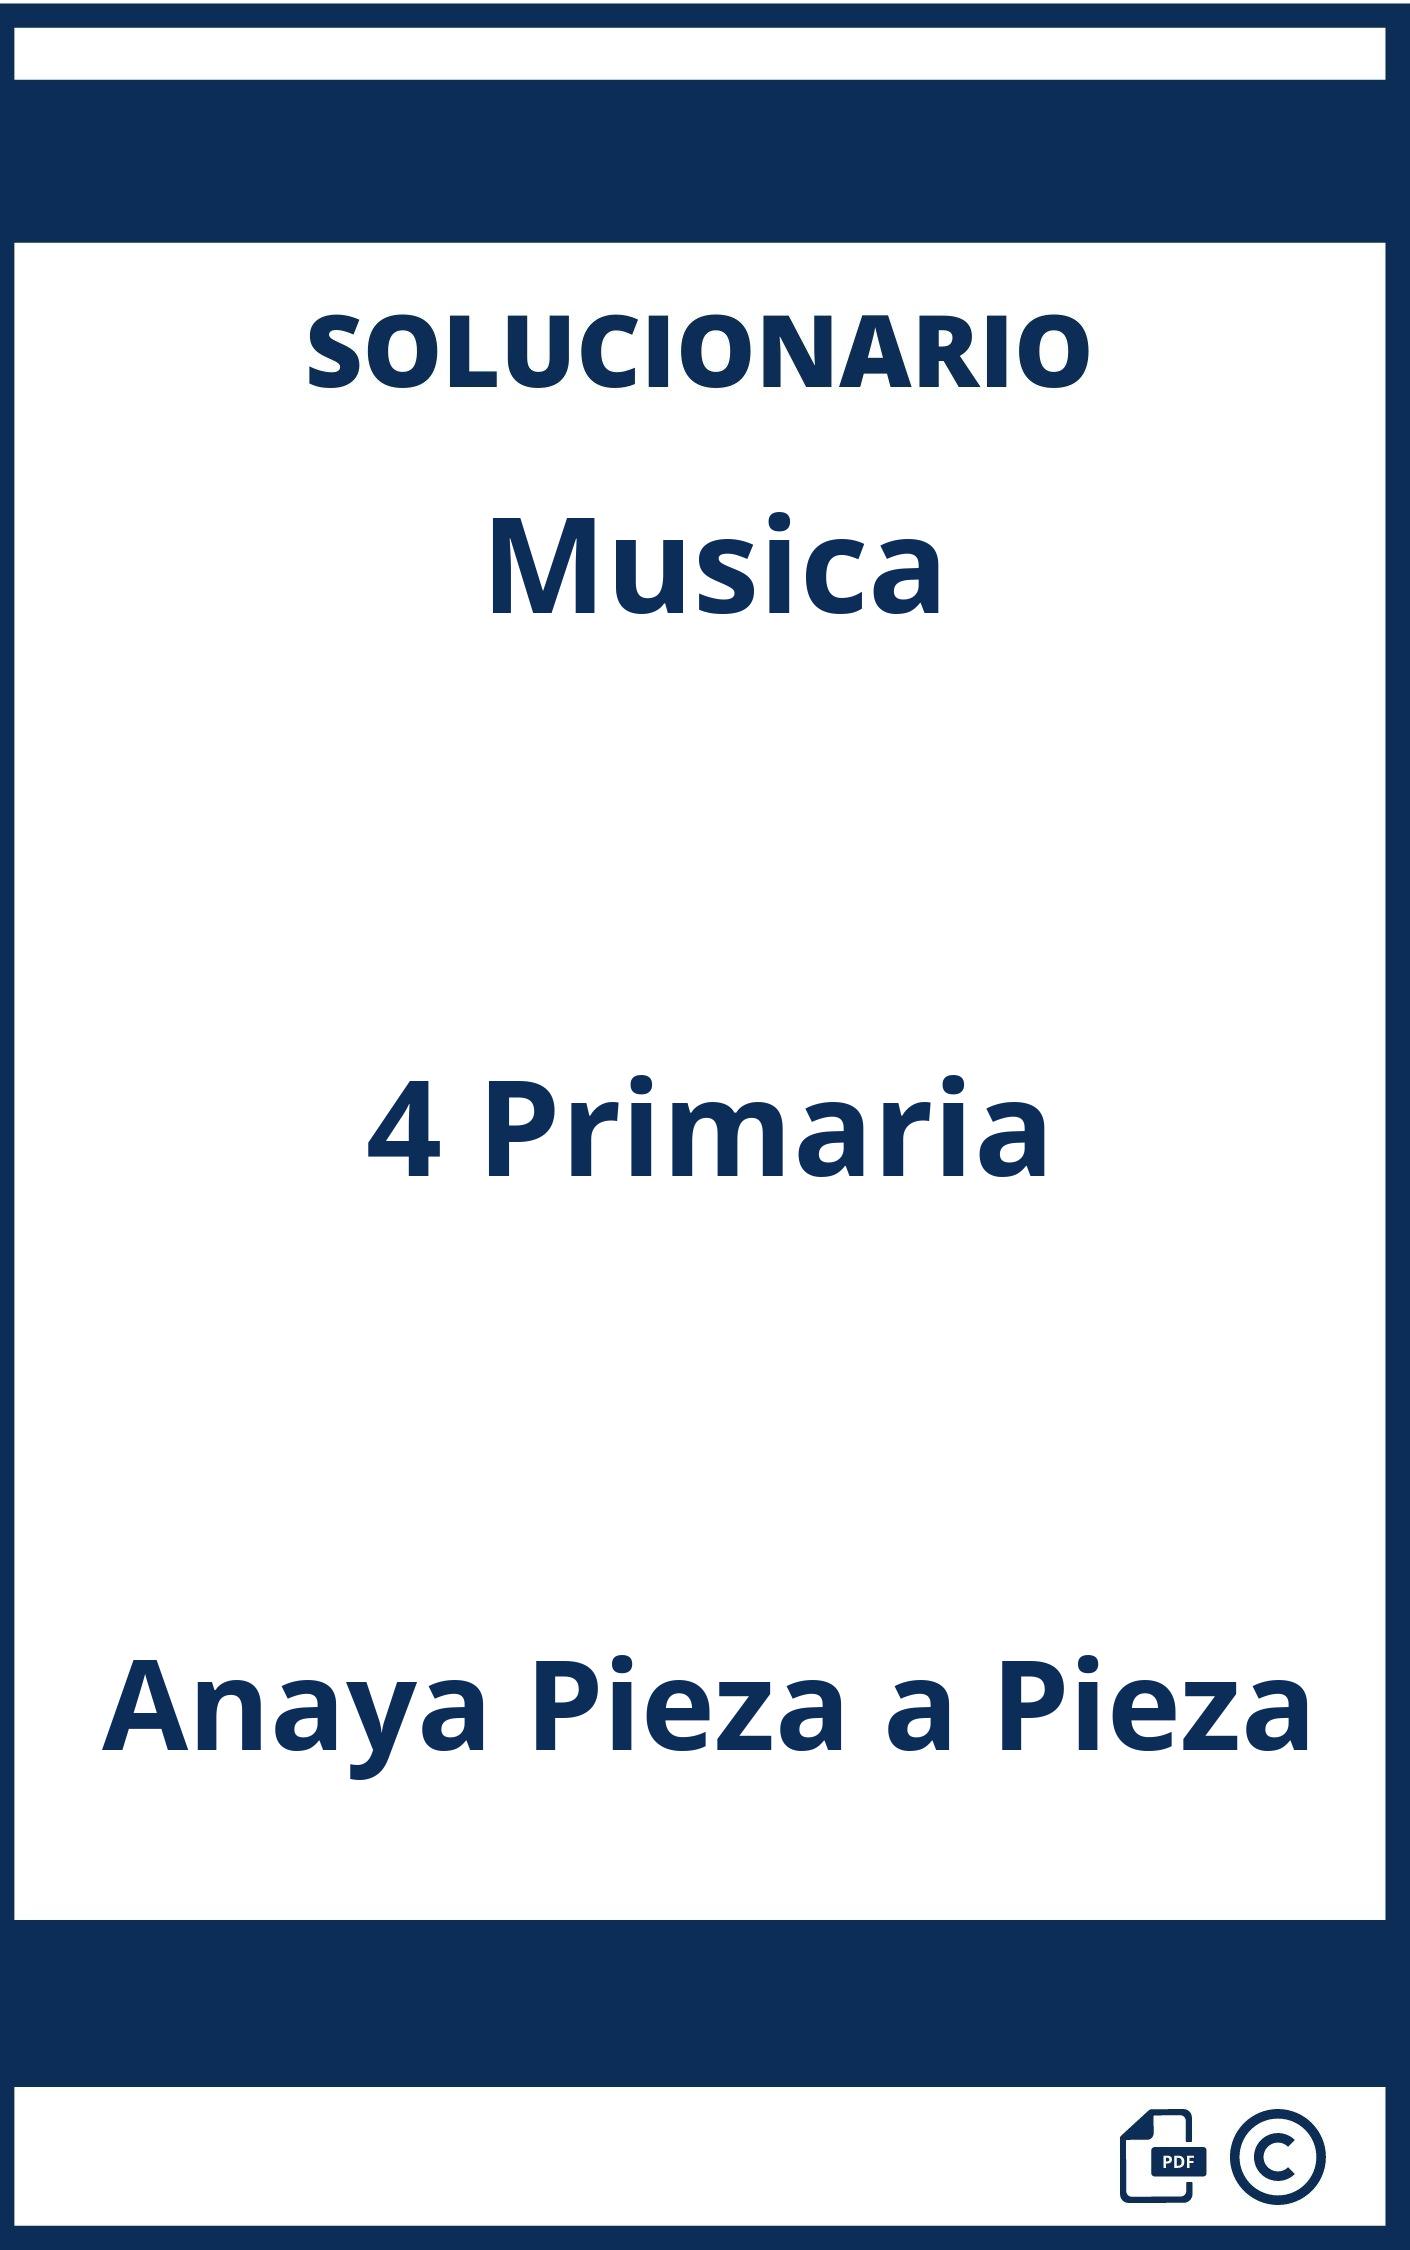 Solucionario Musica 4 Primaria Anaya Pieza a Pieza